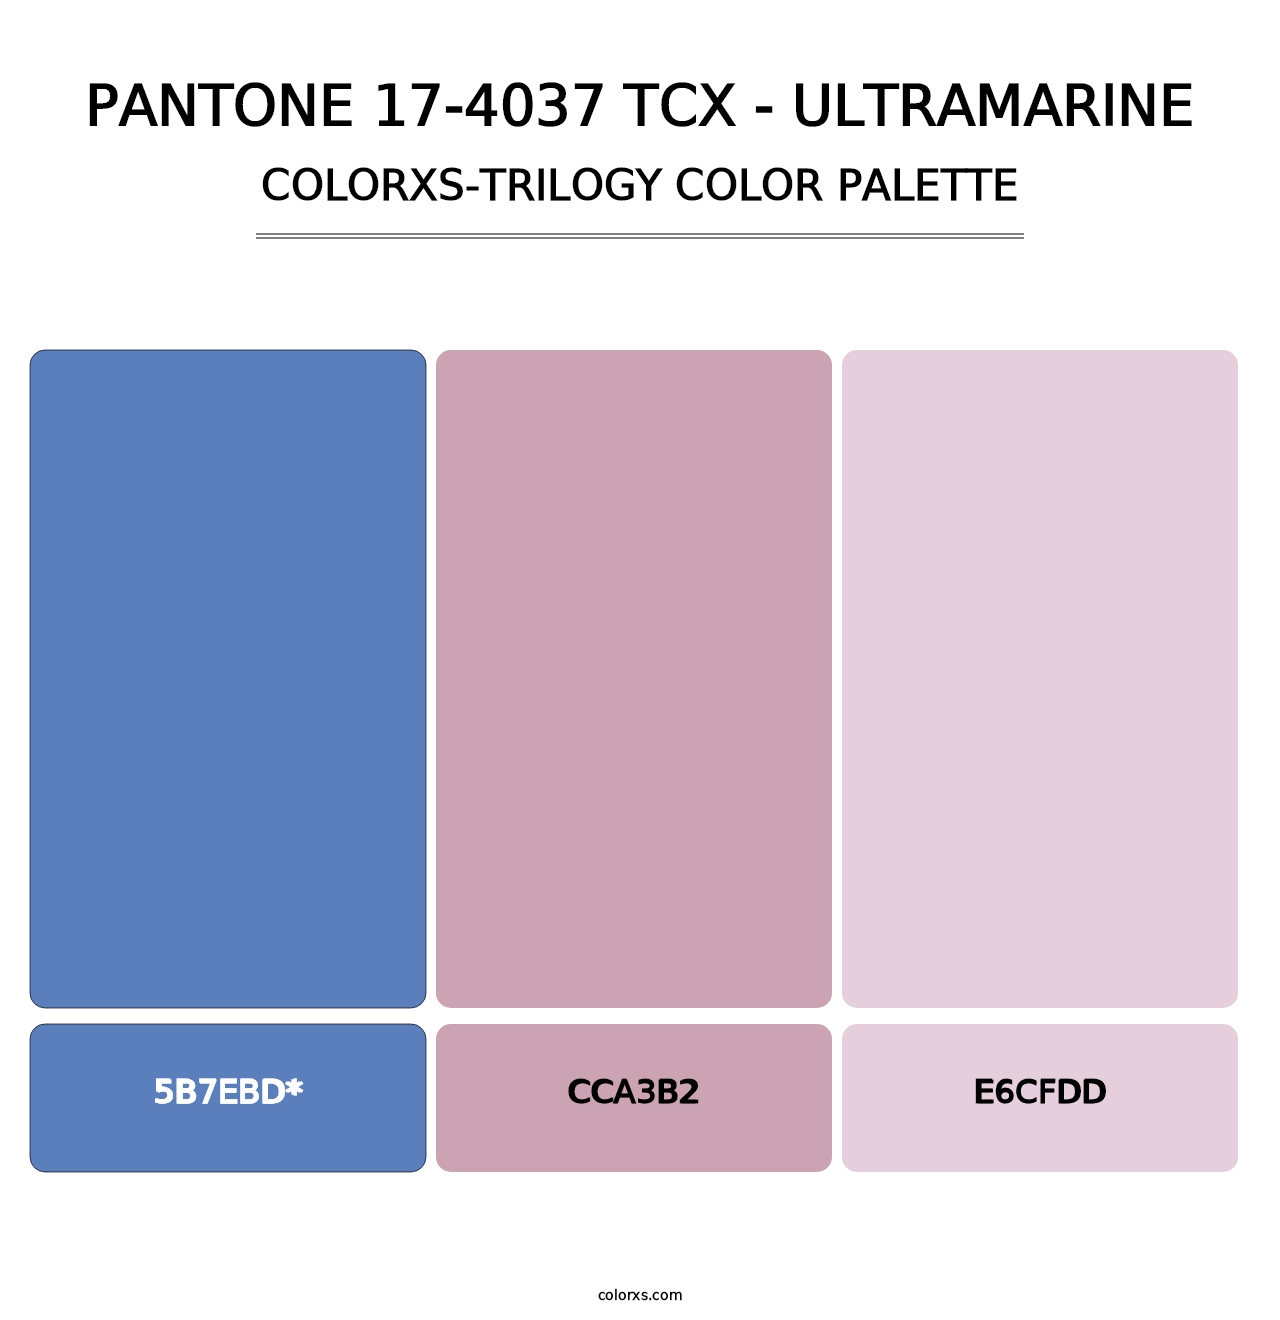 PANTONE 17-4037 TCX - Ultramarine - Colorxs Trilogy Palette